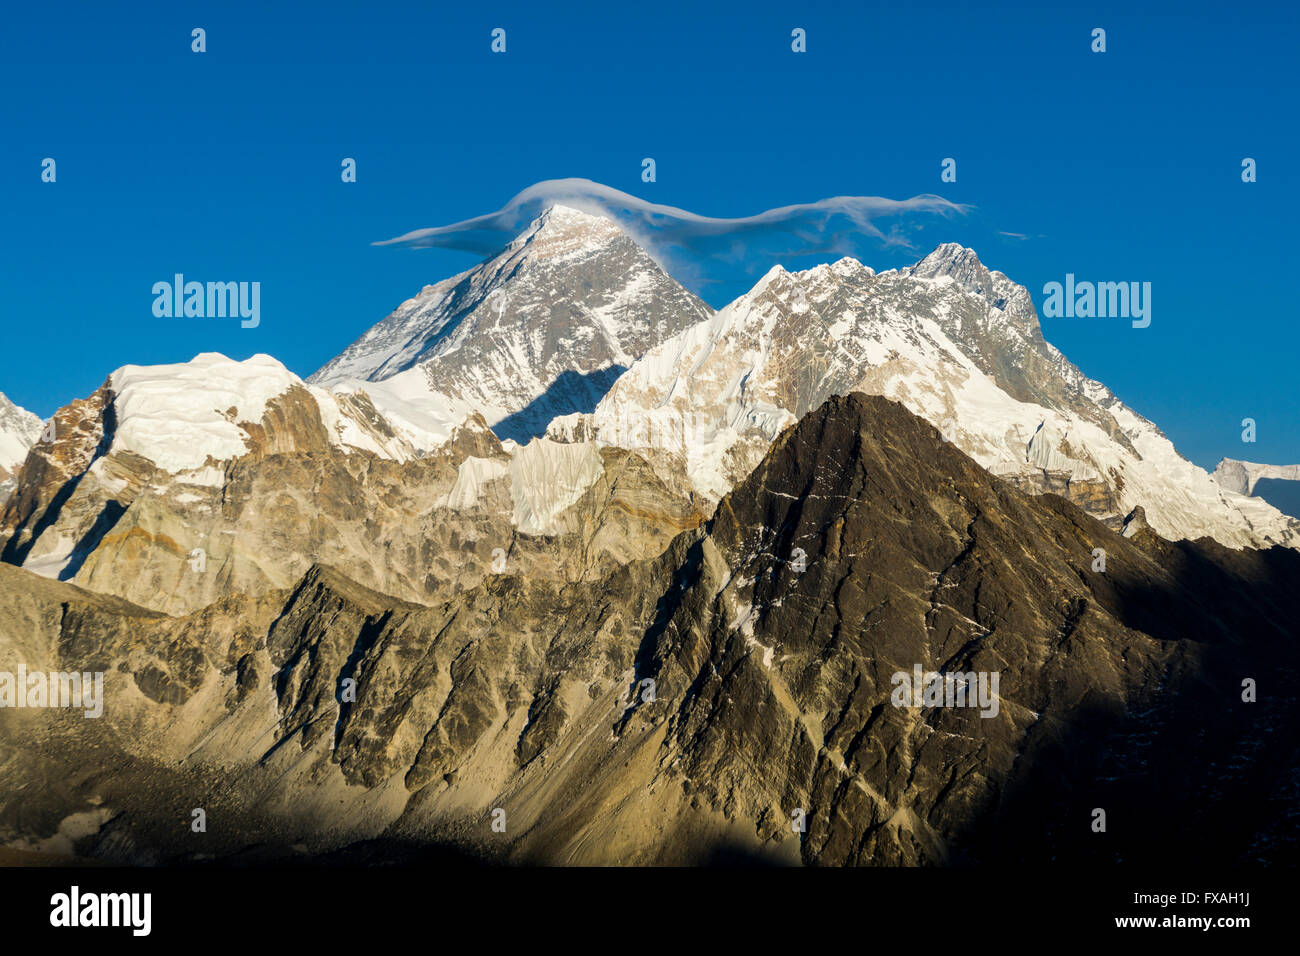 Mt. Everest (8848m) con una nube blanca en su parte superior, visto desde Gokyo Ri (5360m), Gokyo, Solo Khumbu, Nepal Foto de stock